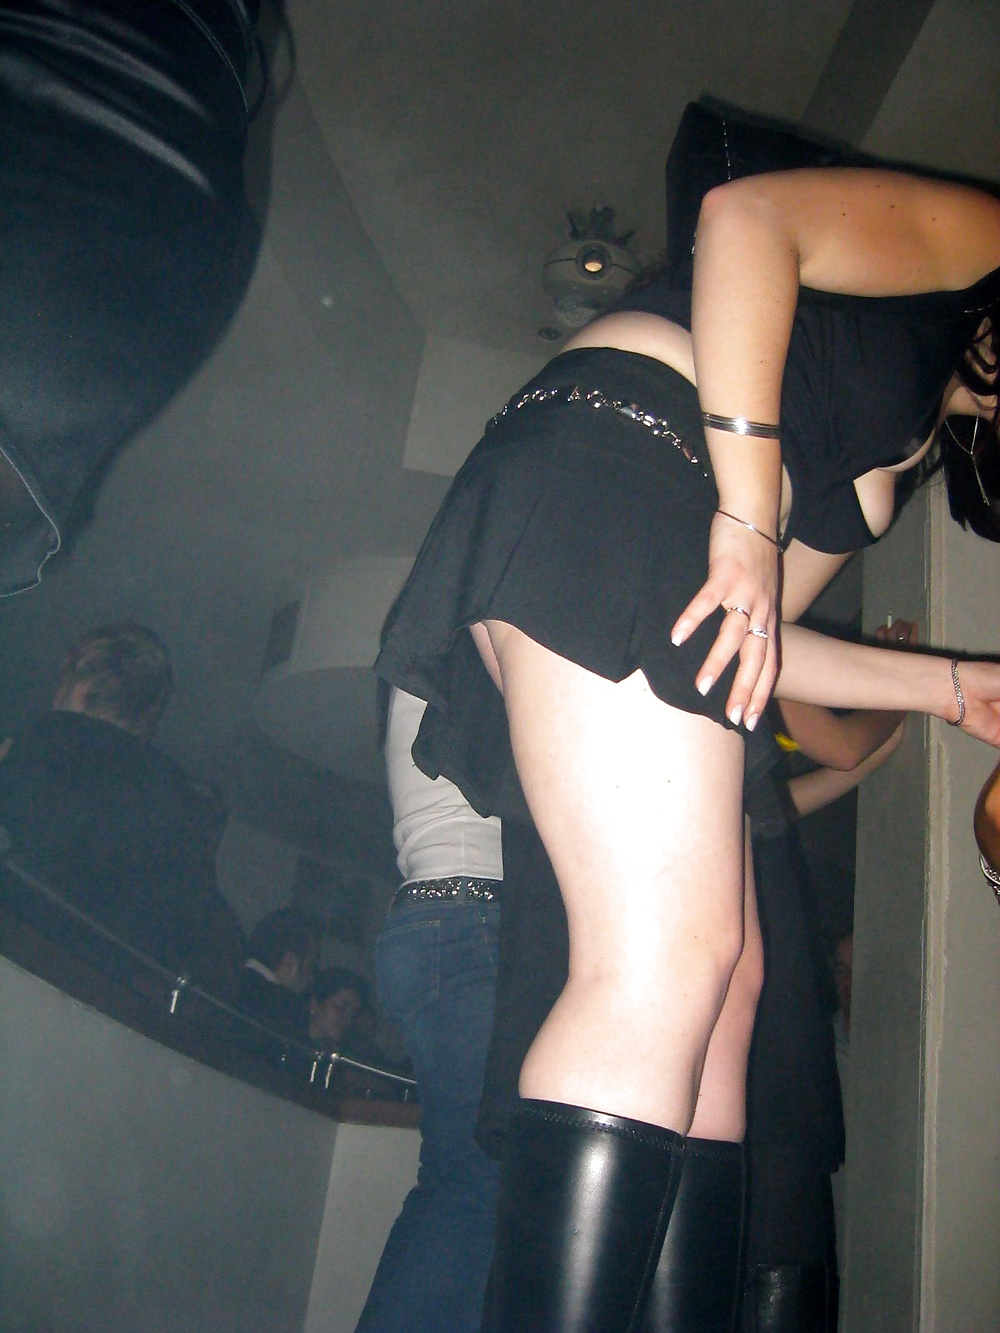 Nightclub Sluts Upskirted #30020989